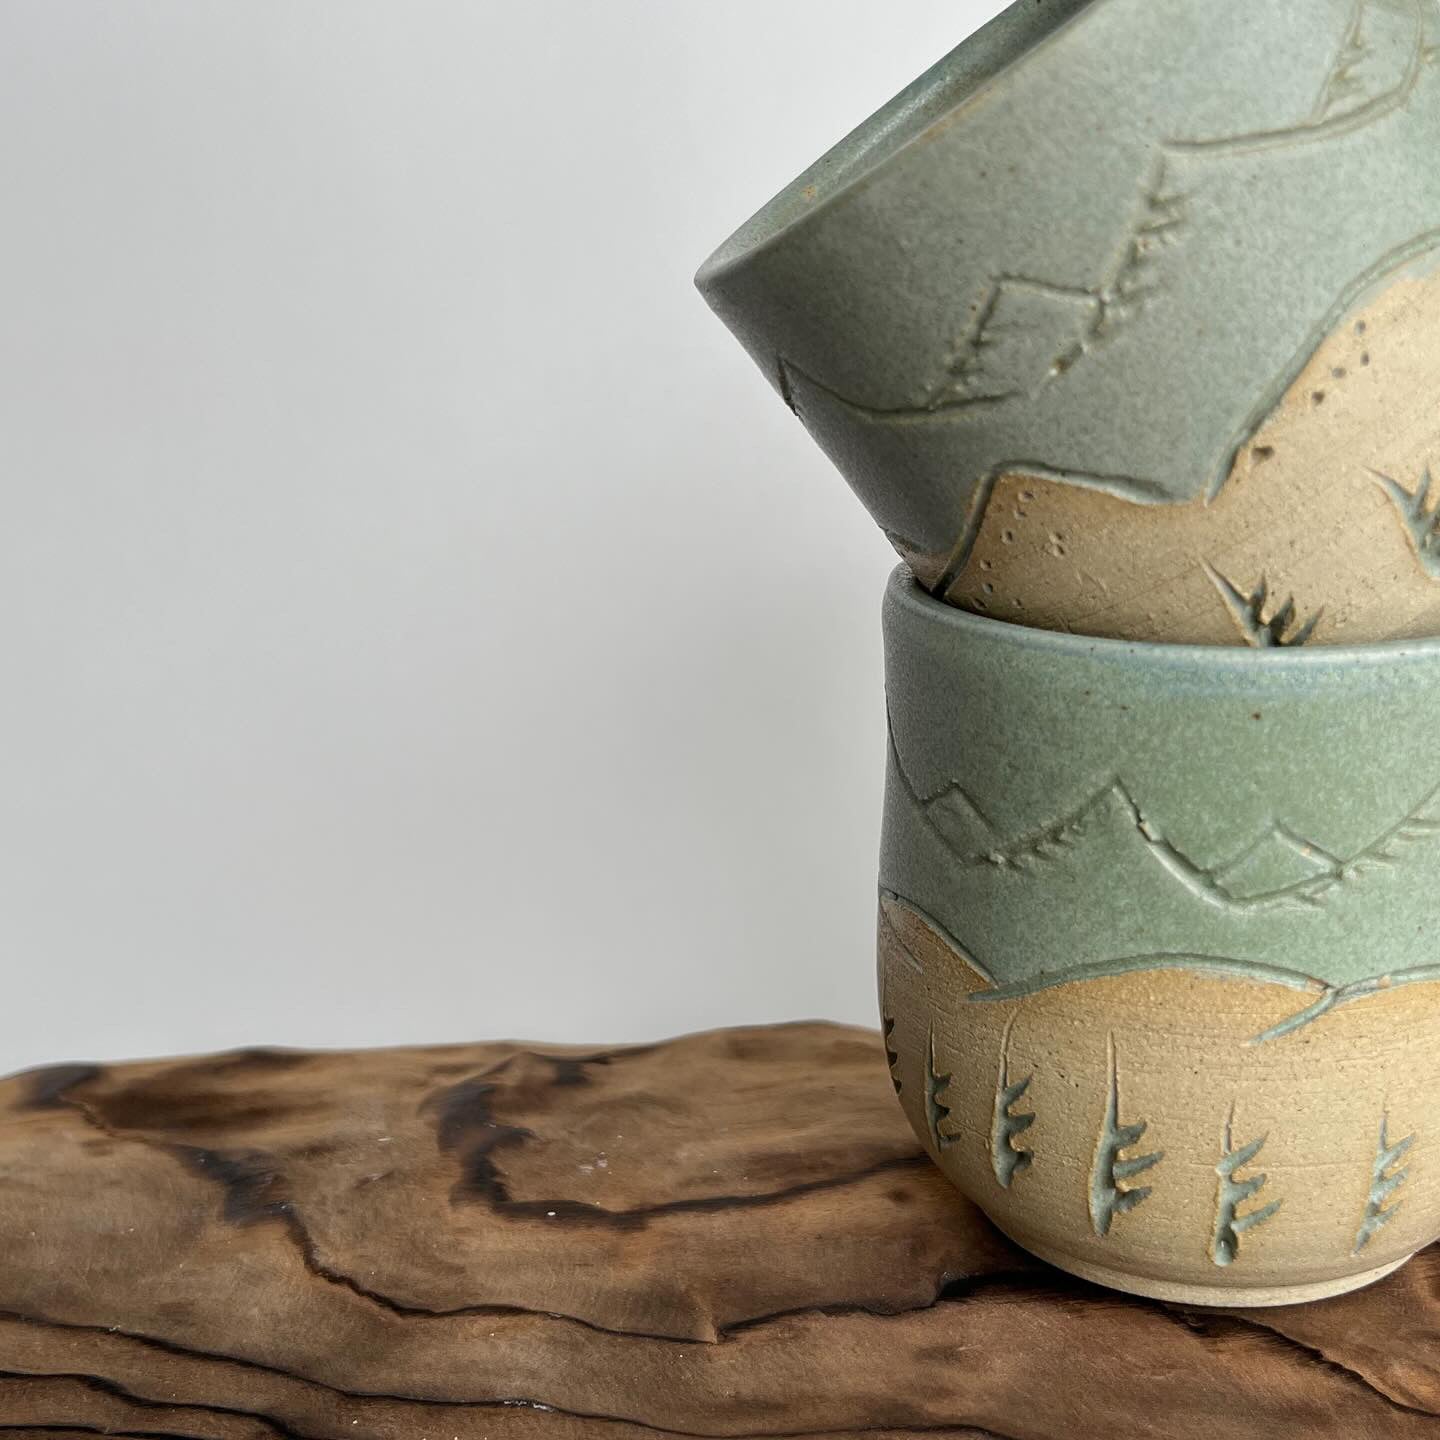 First Mountains | Ceramic Mugs